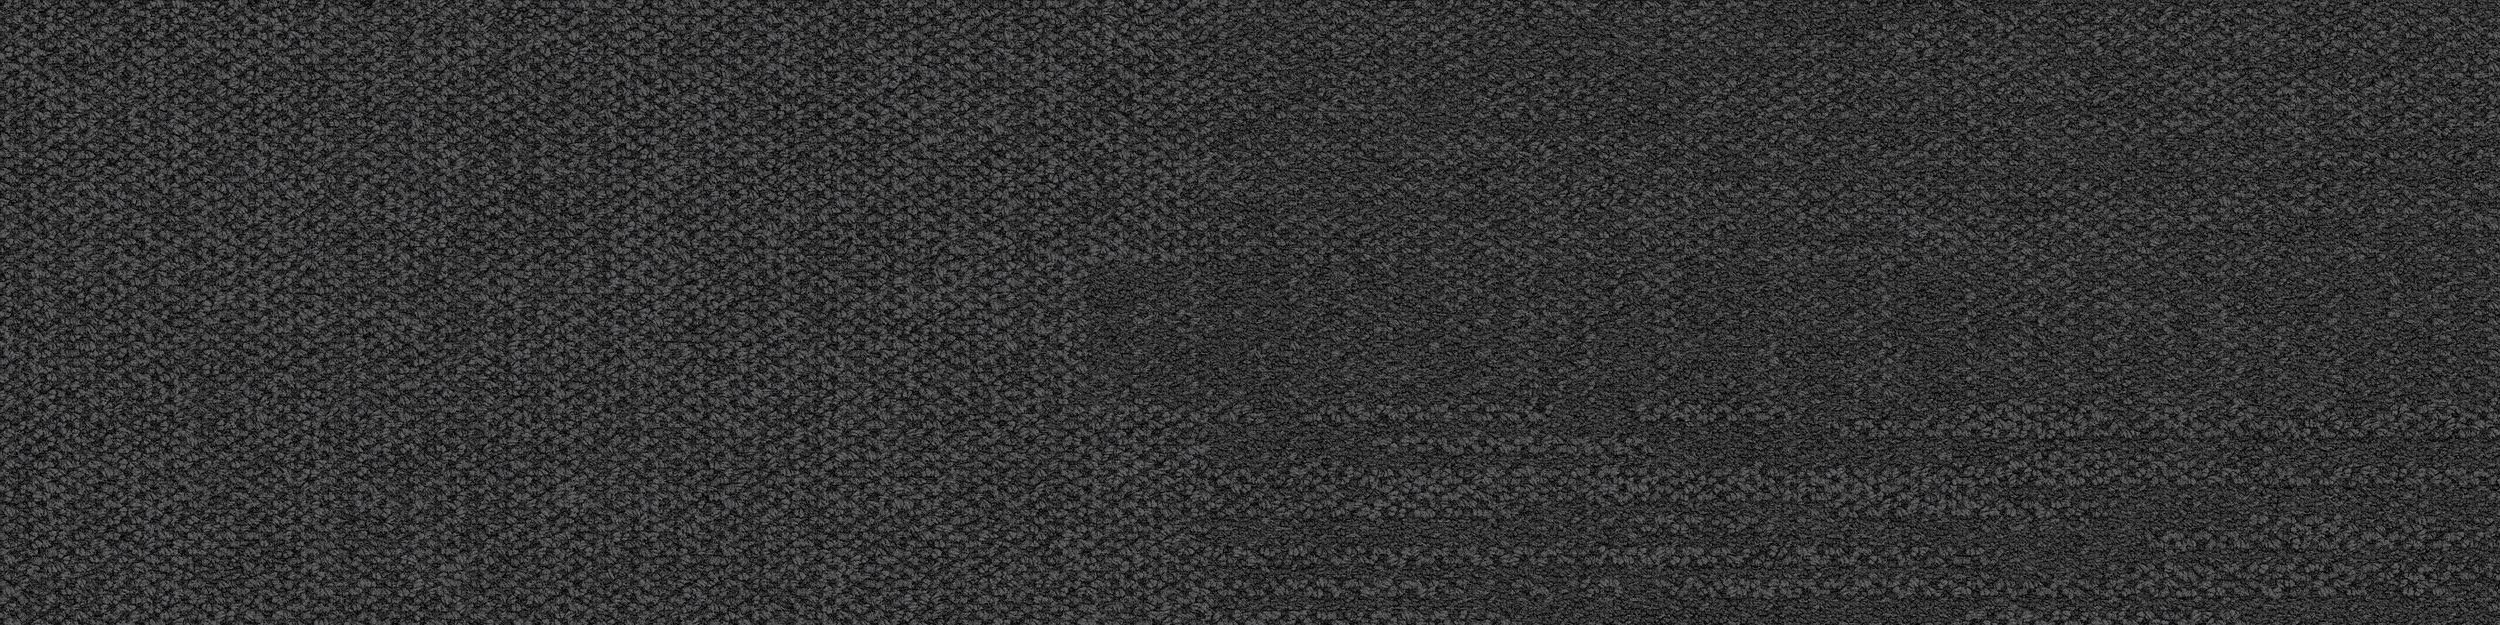 Verticals Carpet Tile In Zenith imagen número 2